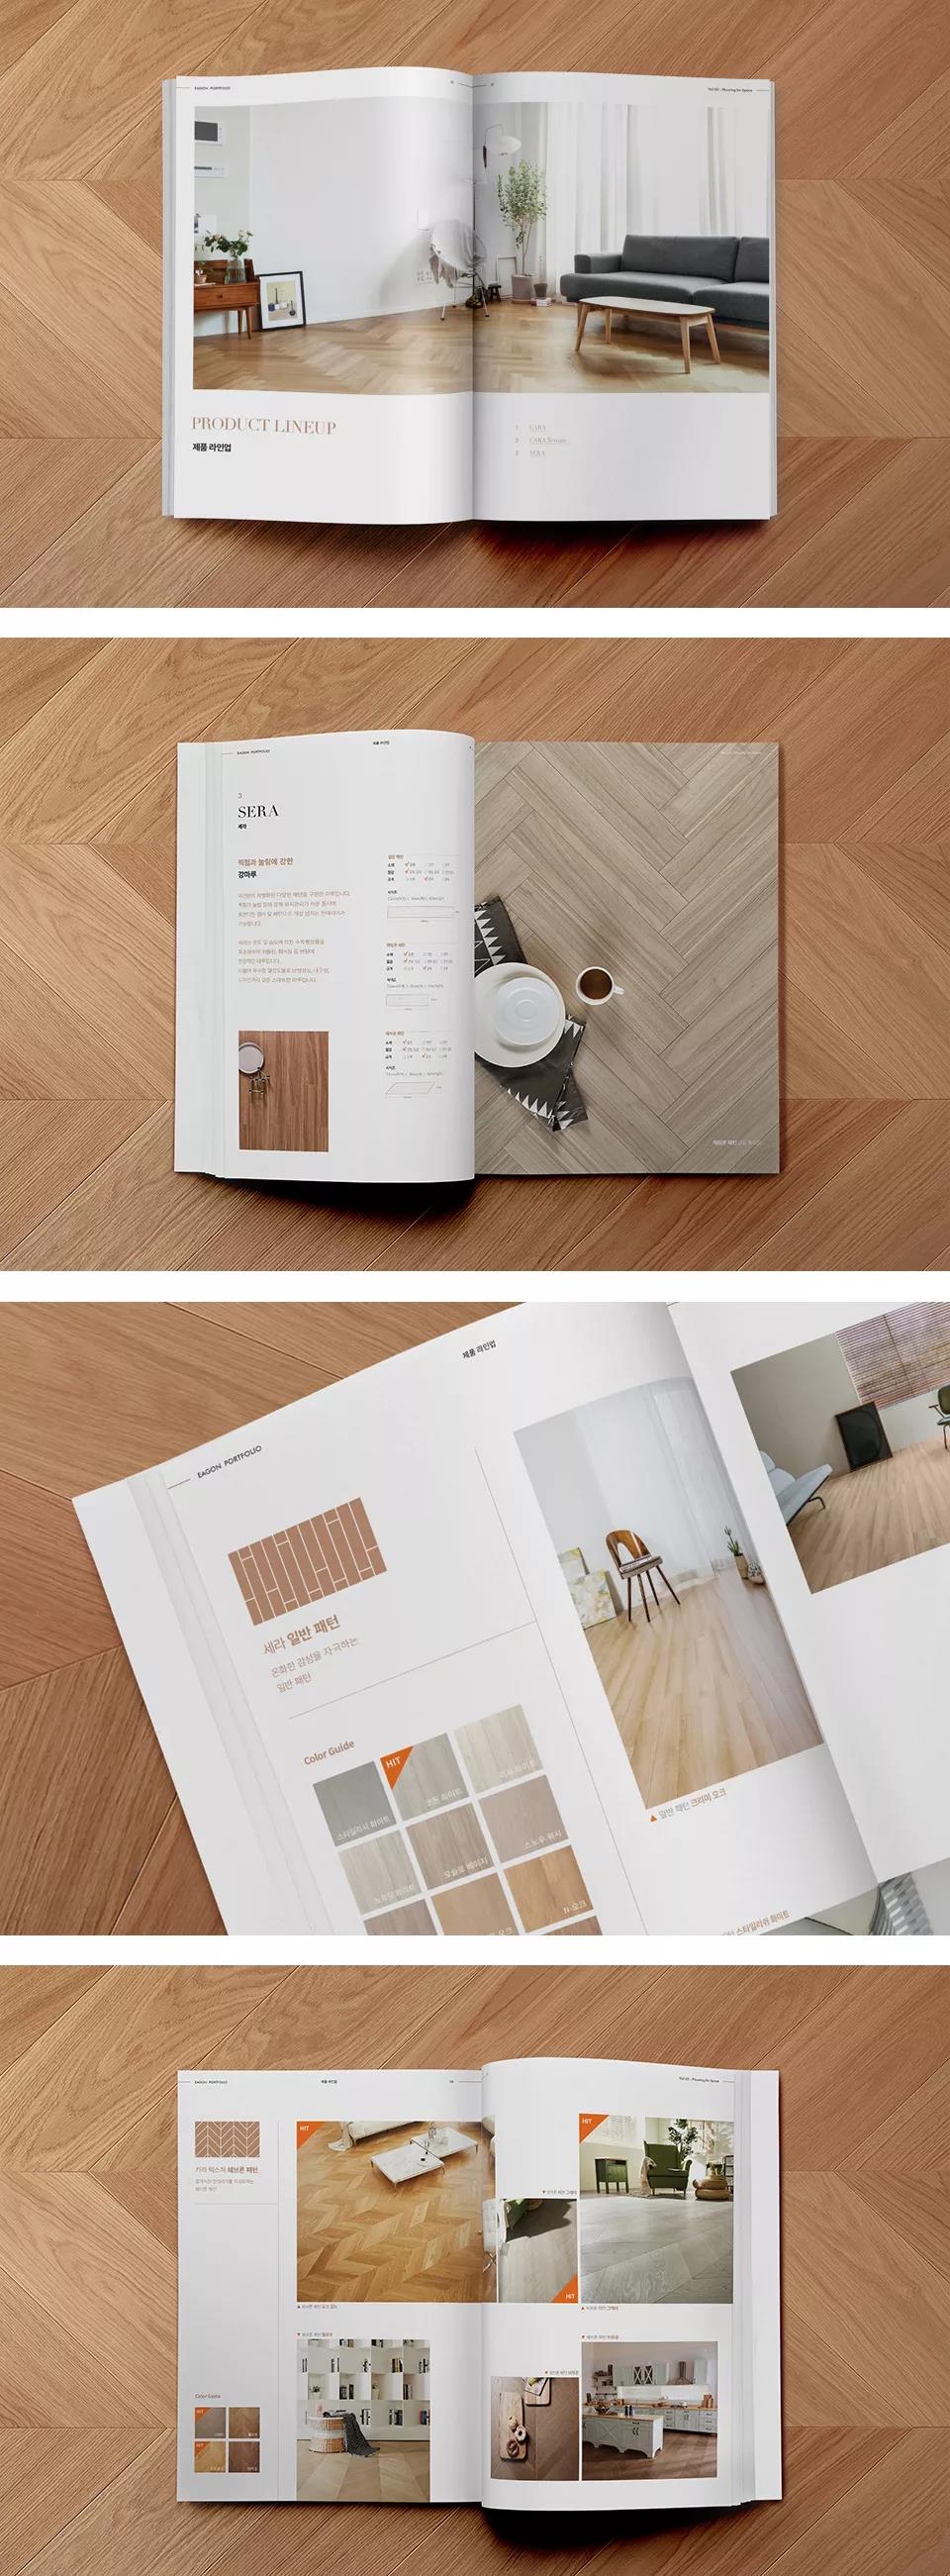 韩国EAGON木地板品牌产品画册设计